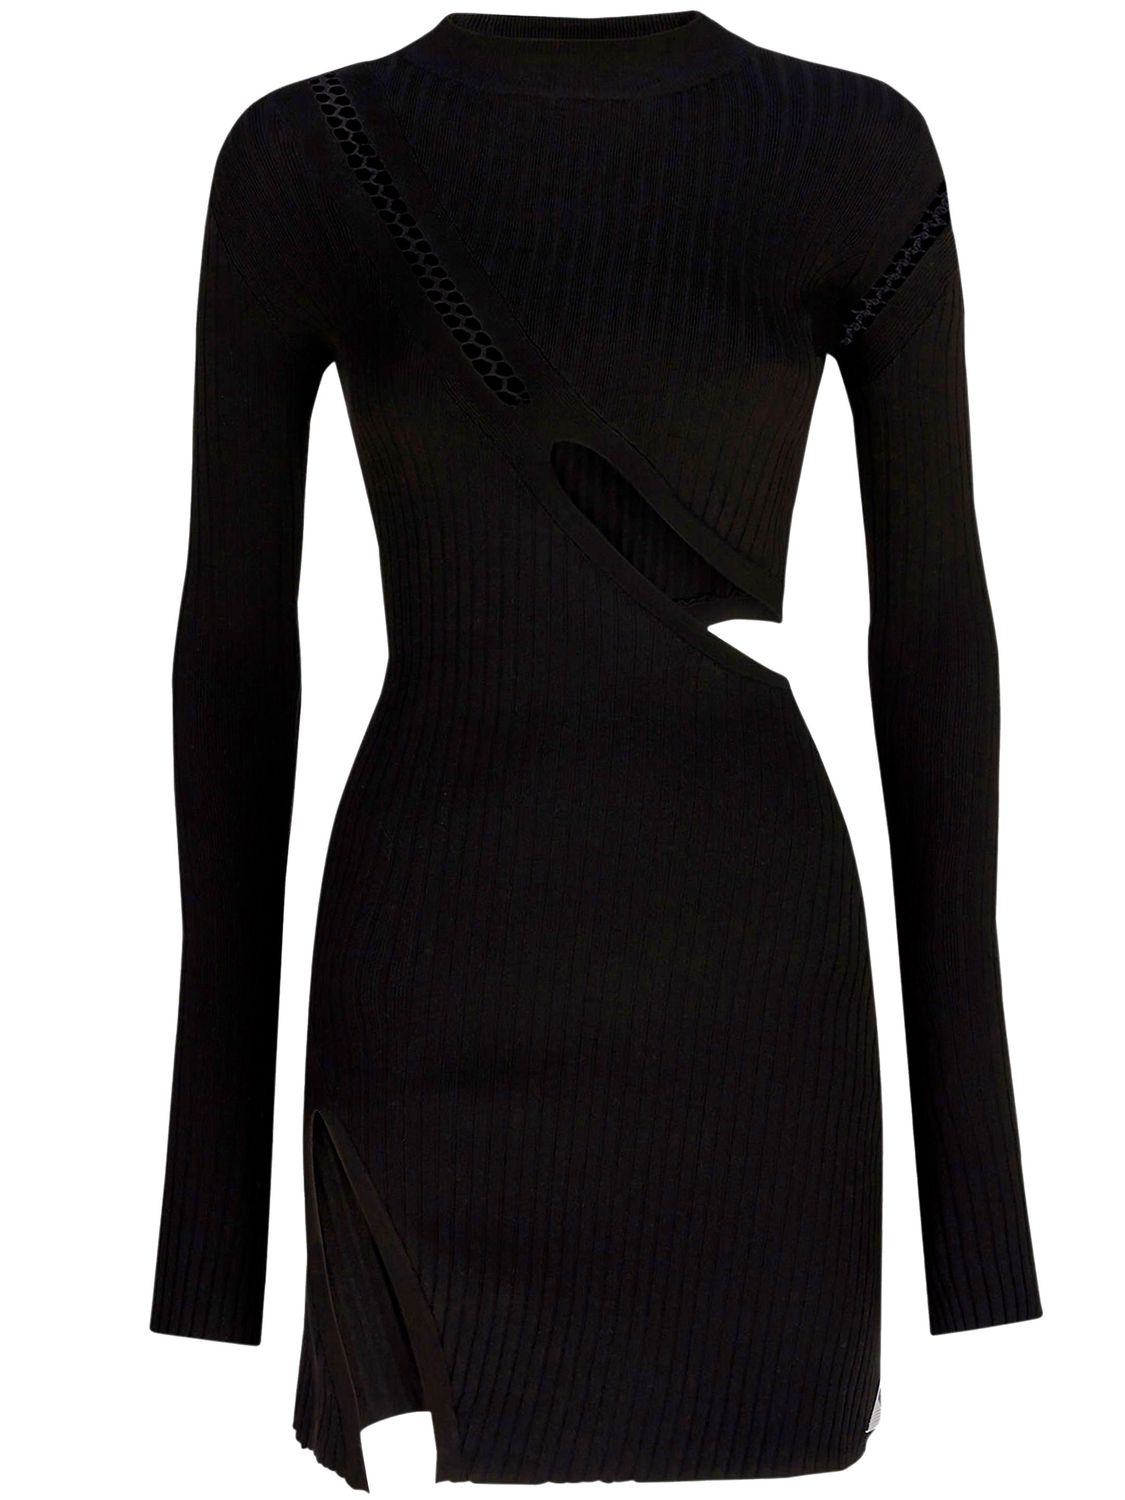 THE ATTICO Black Stretch Viscose Mini Dress with Oblique Cuts and Embroidered Label